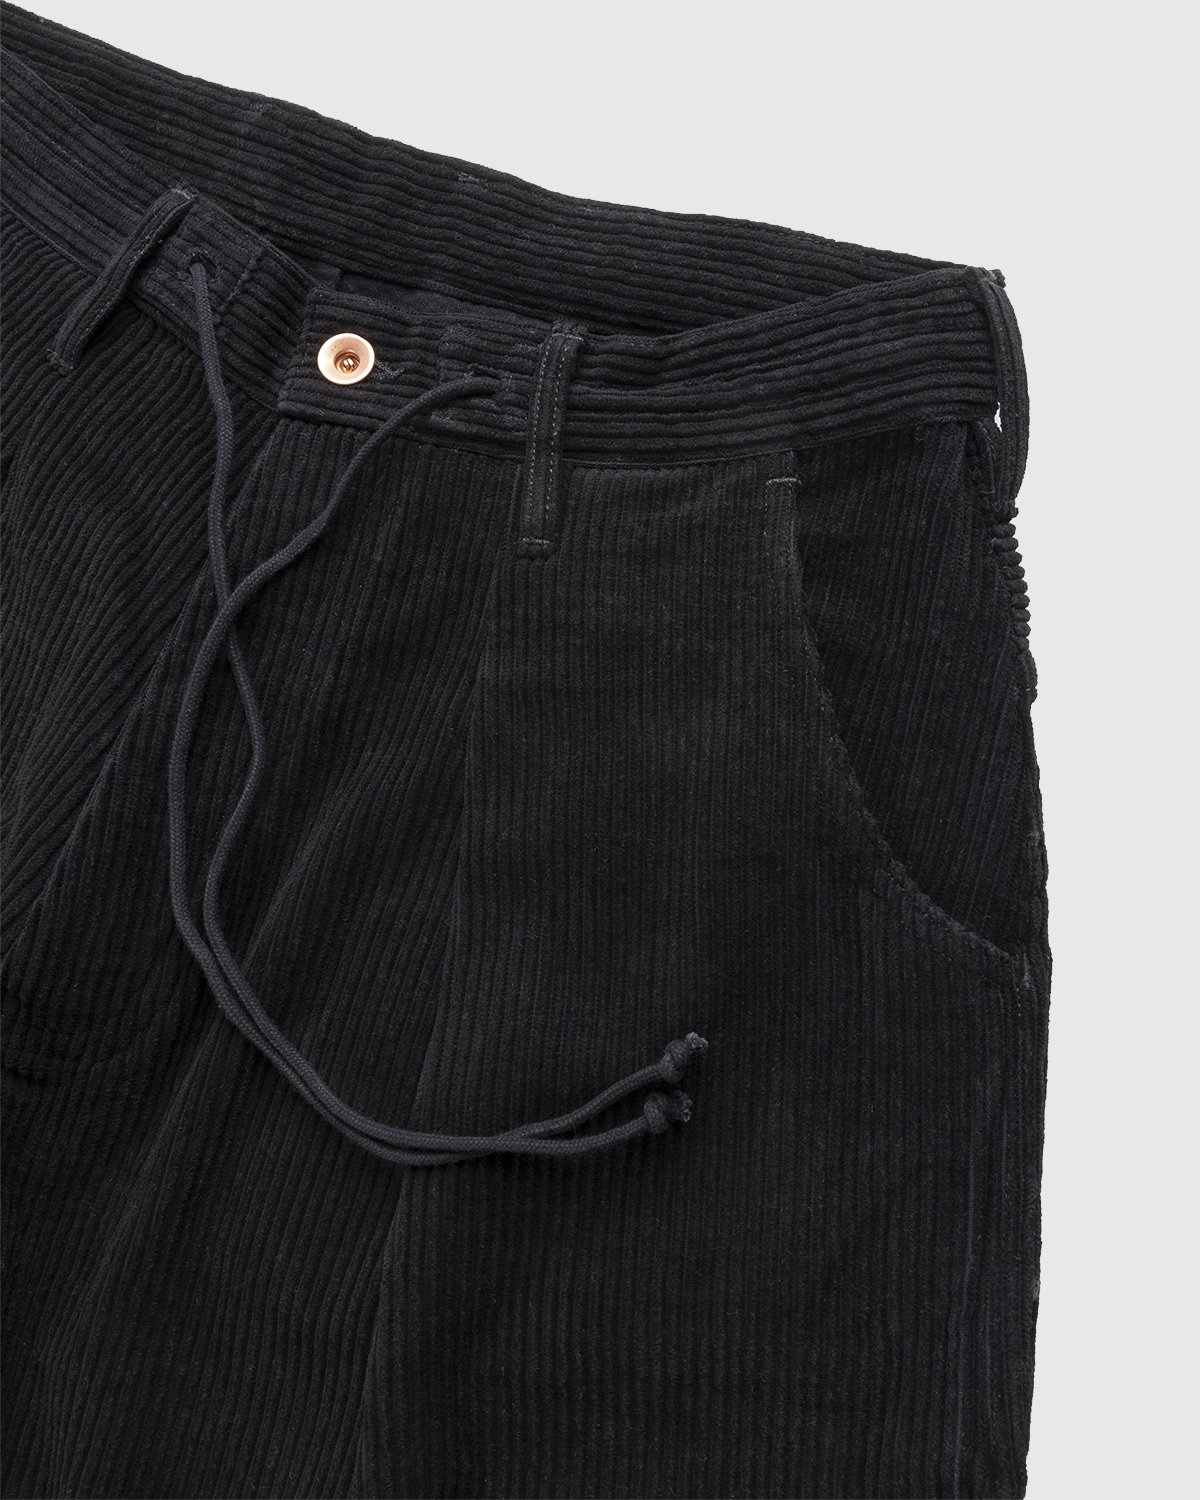 Story mfg. - Corduroy Lush Pants Iron - Clothing - Black - Image 4